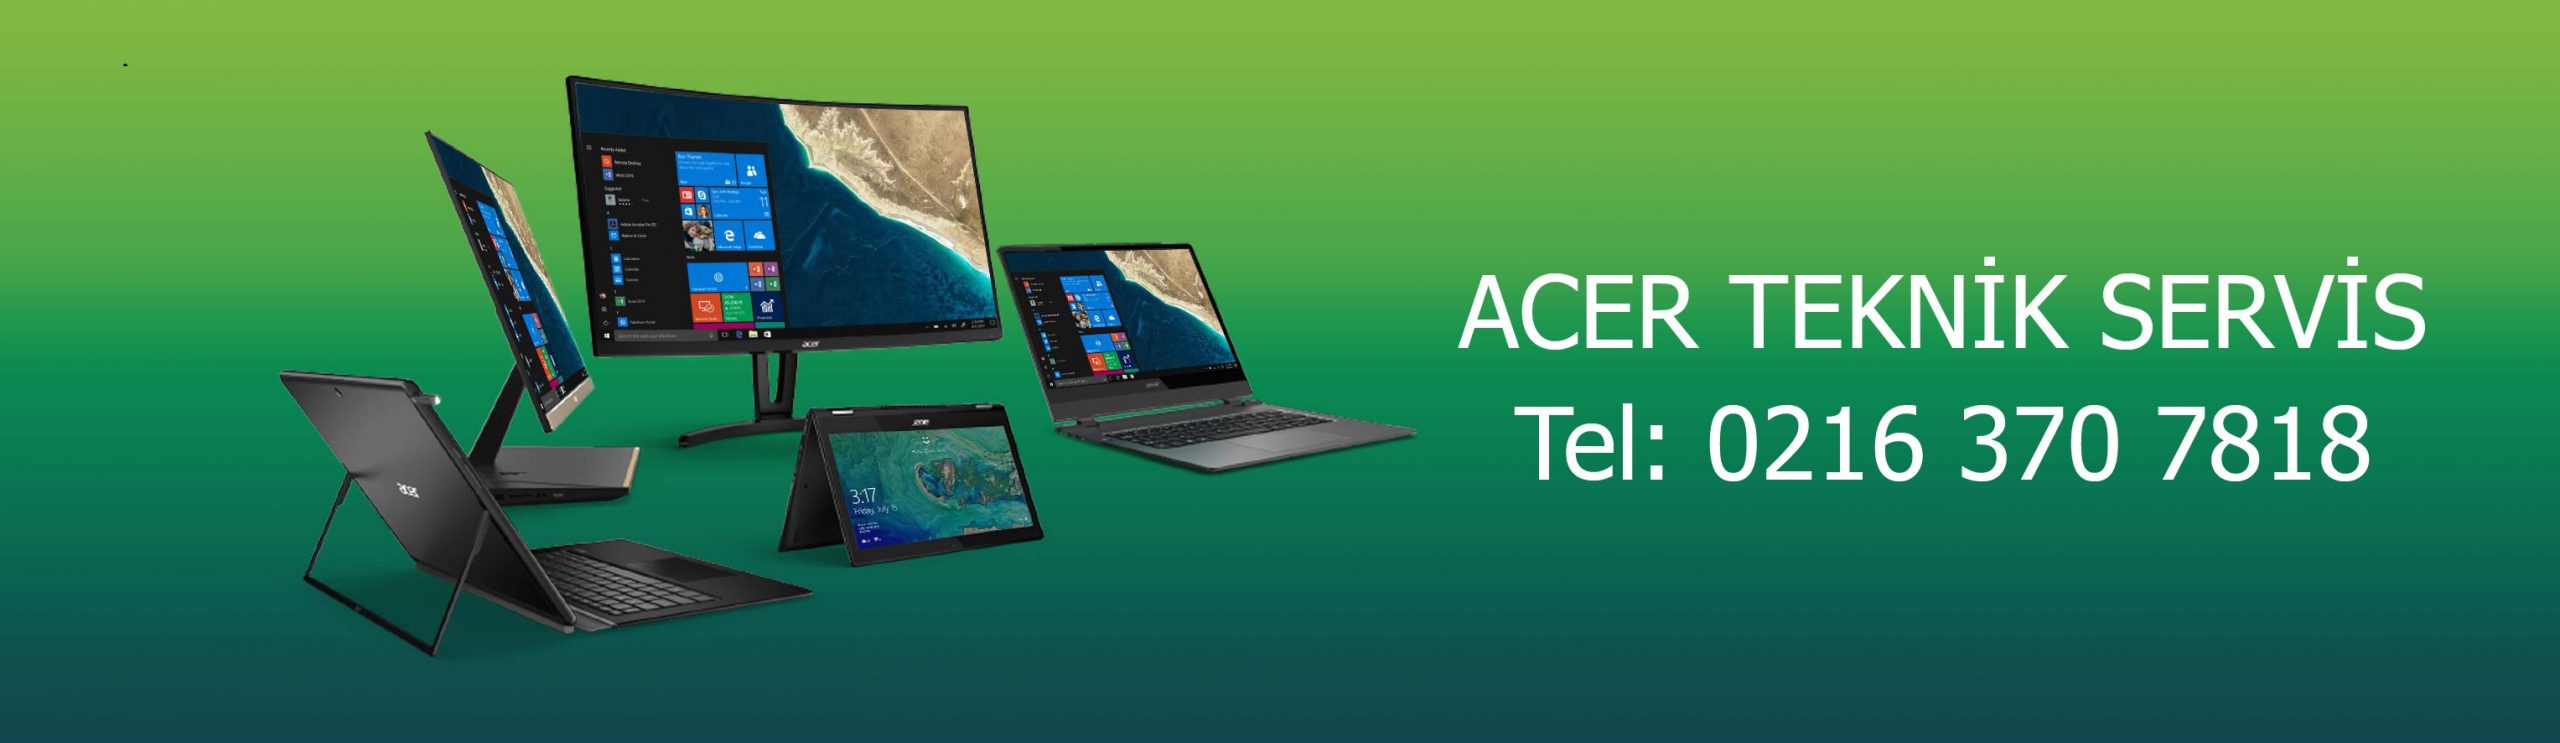 Acer Laptop Görüntü Gelmiyor